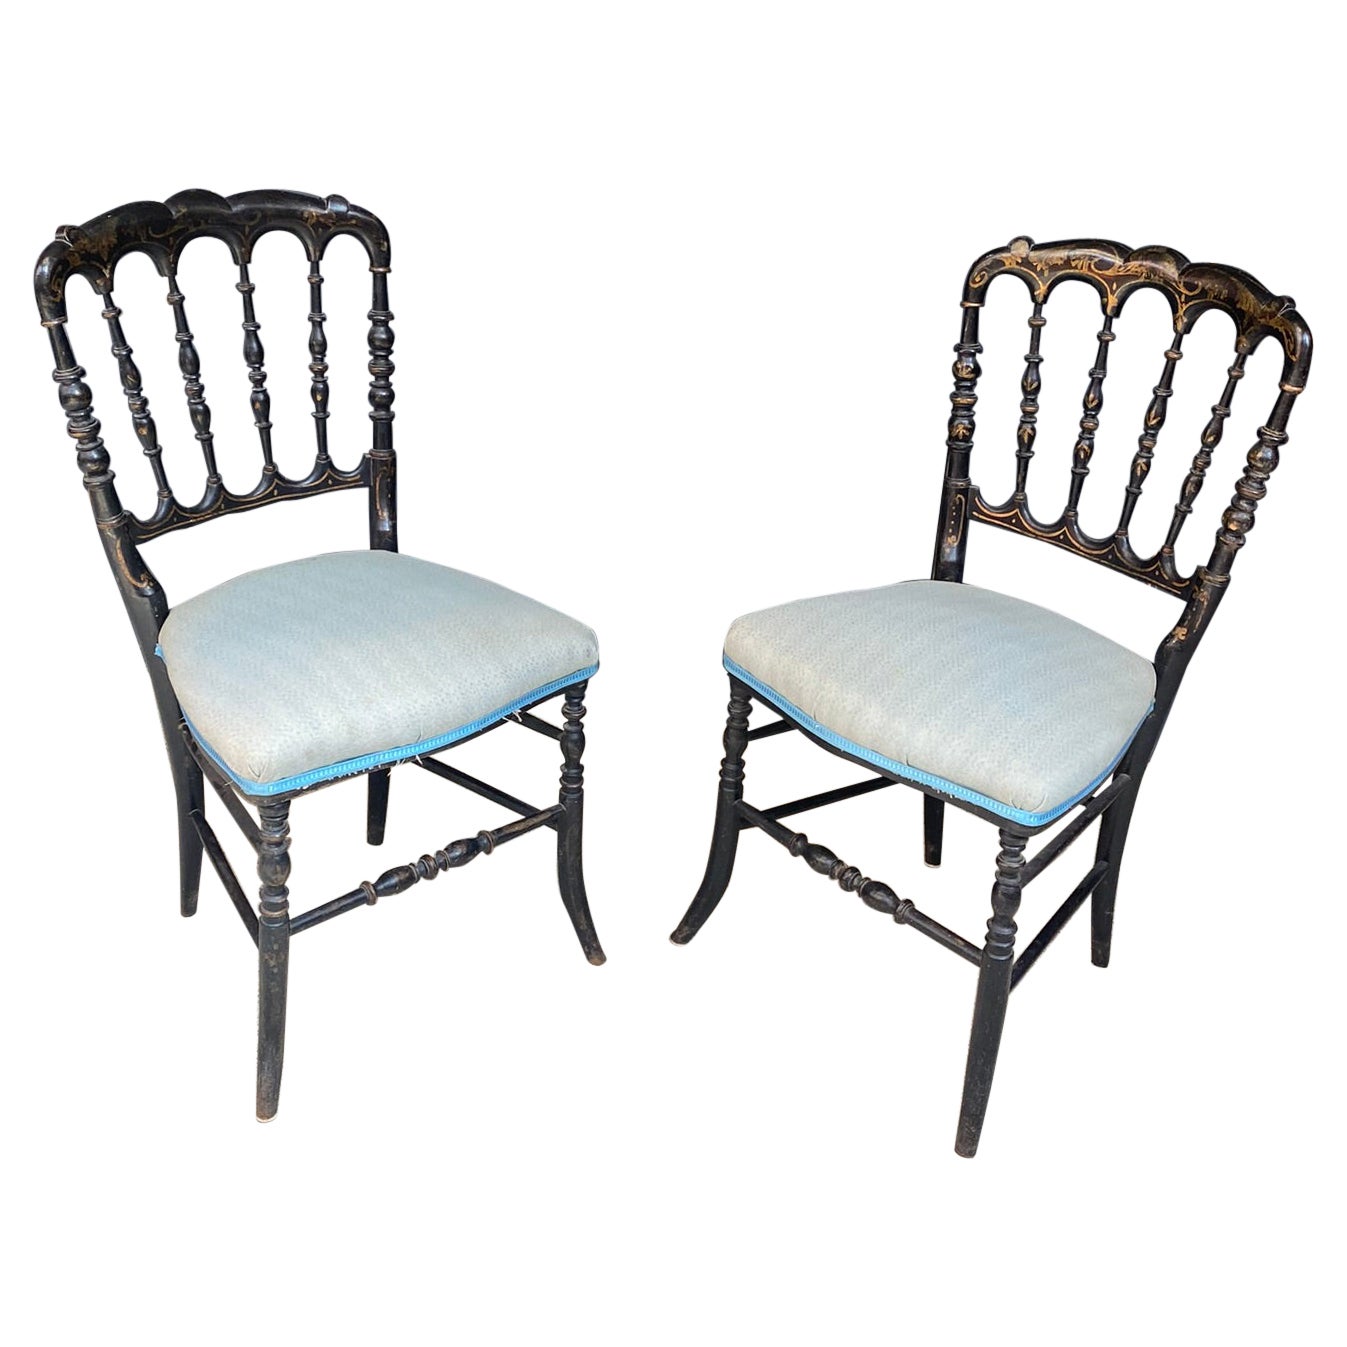 2 chaises originales Chiarivari Napoléon III en bois d'ébène, France, années 1850